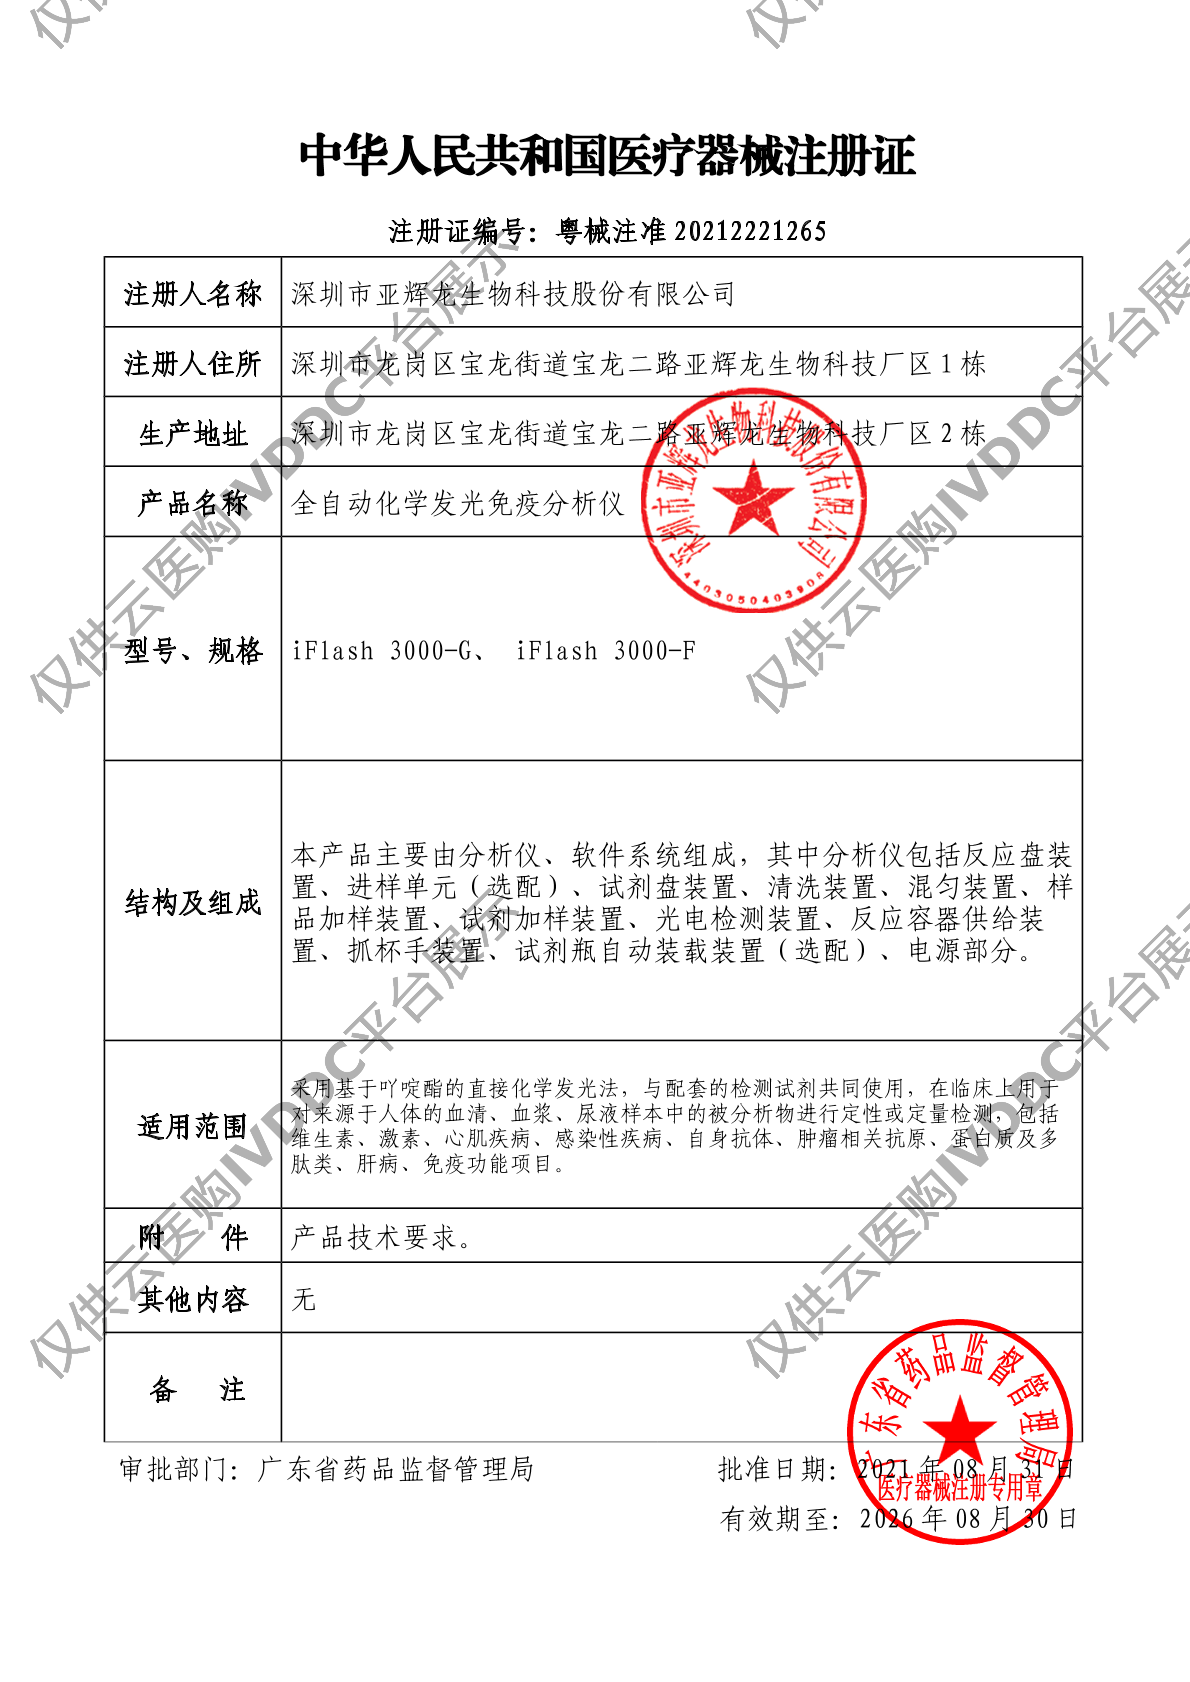 【亚辉龙】全自动化学发光免疫分析仪 iFlash 3000-G注册证